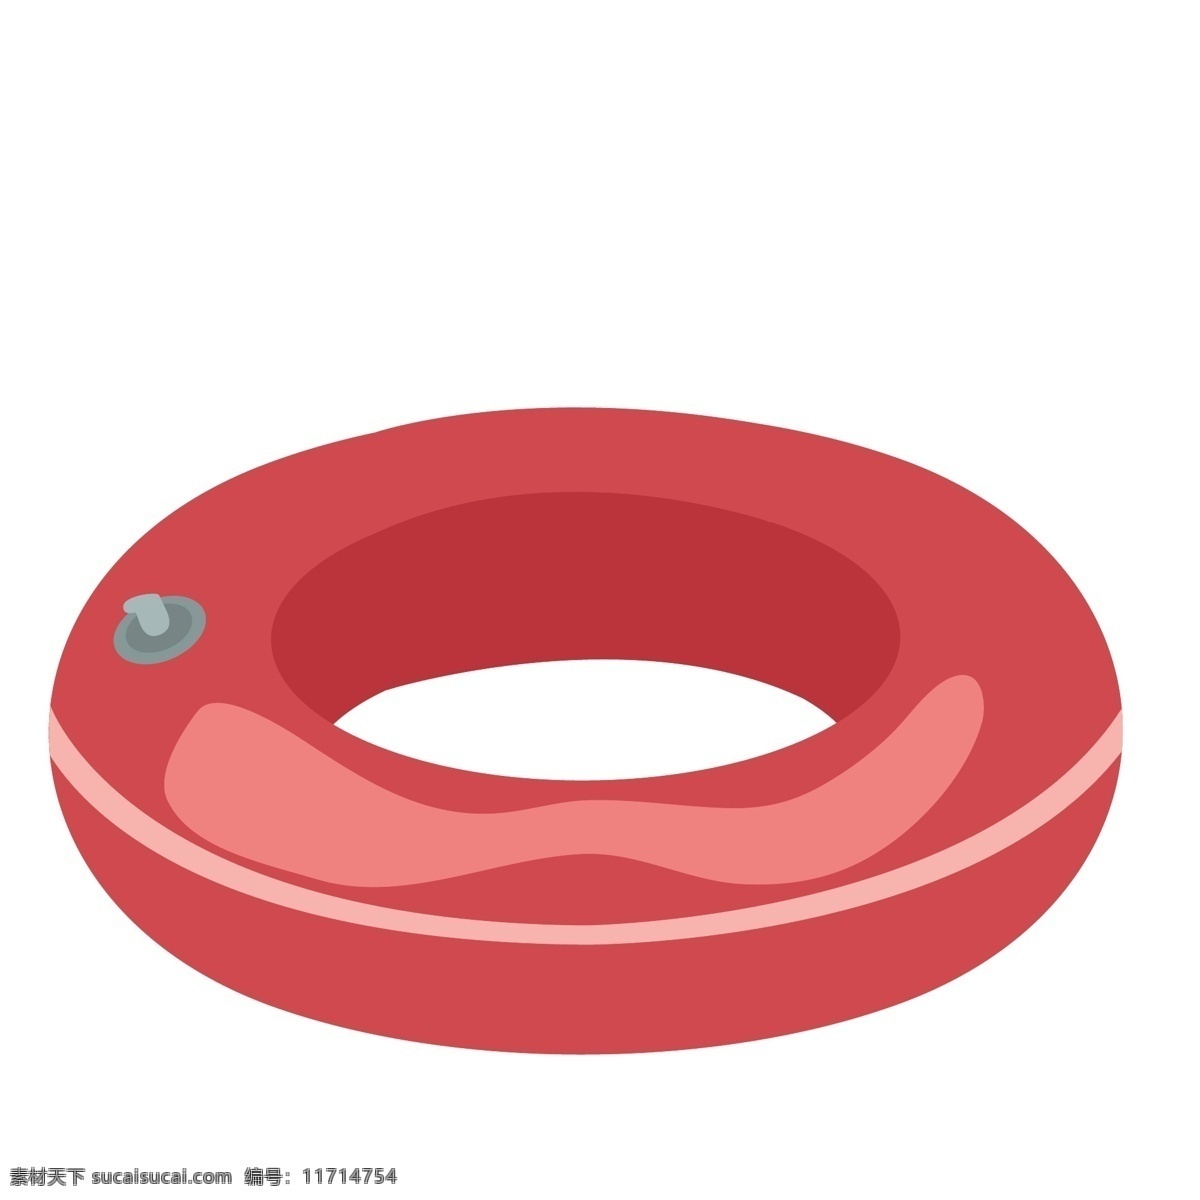 红色 圆形 游泳 圈 装饰 游泳圈 卡通 彩色 小清新 创意 矢量 商务 科技 办公 元素 现代 简约 图案